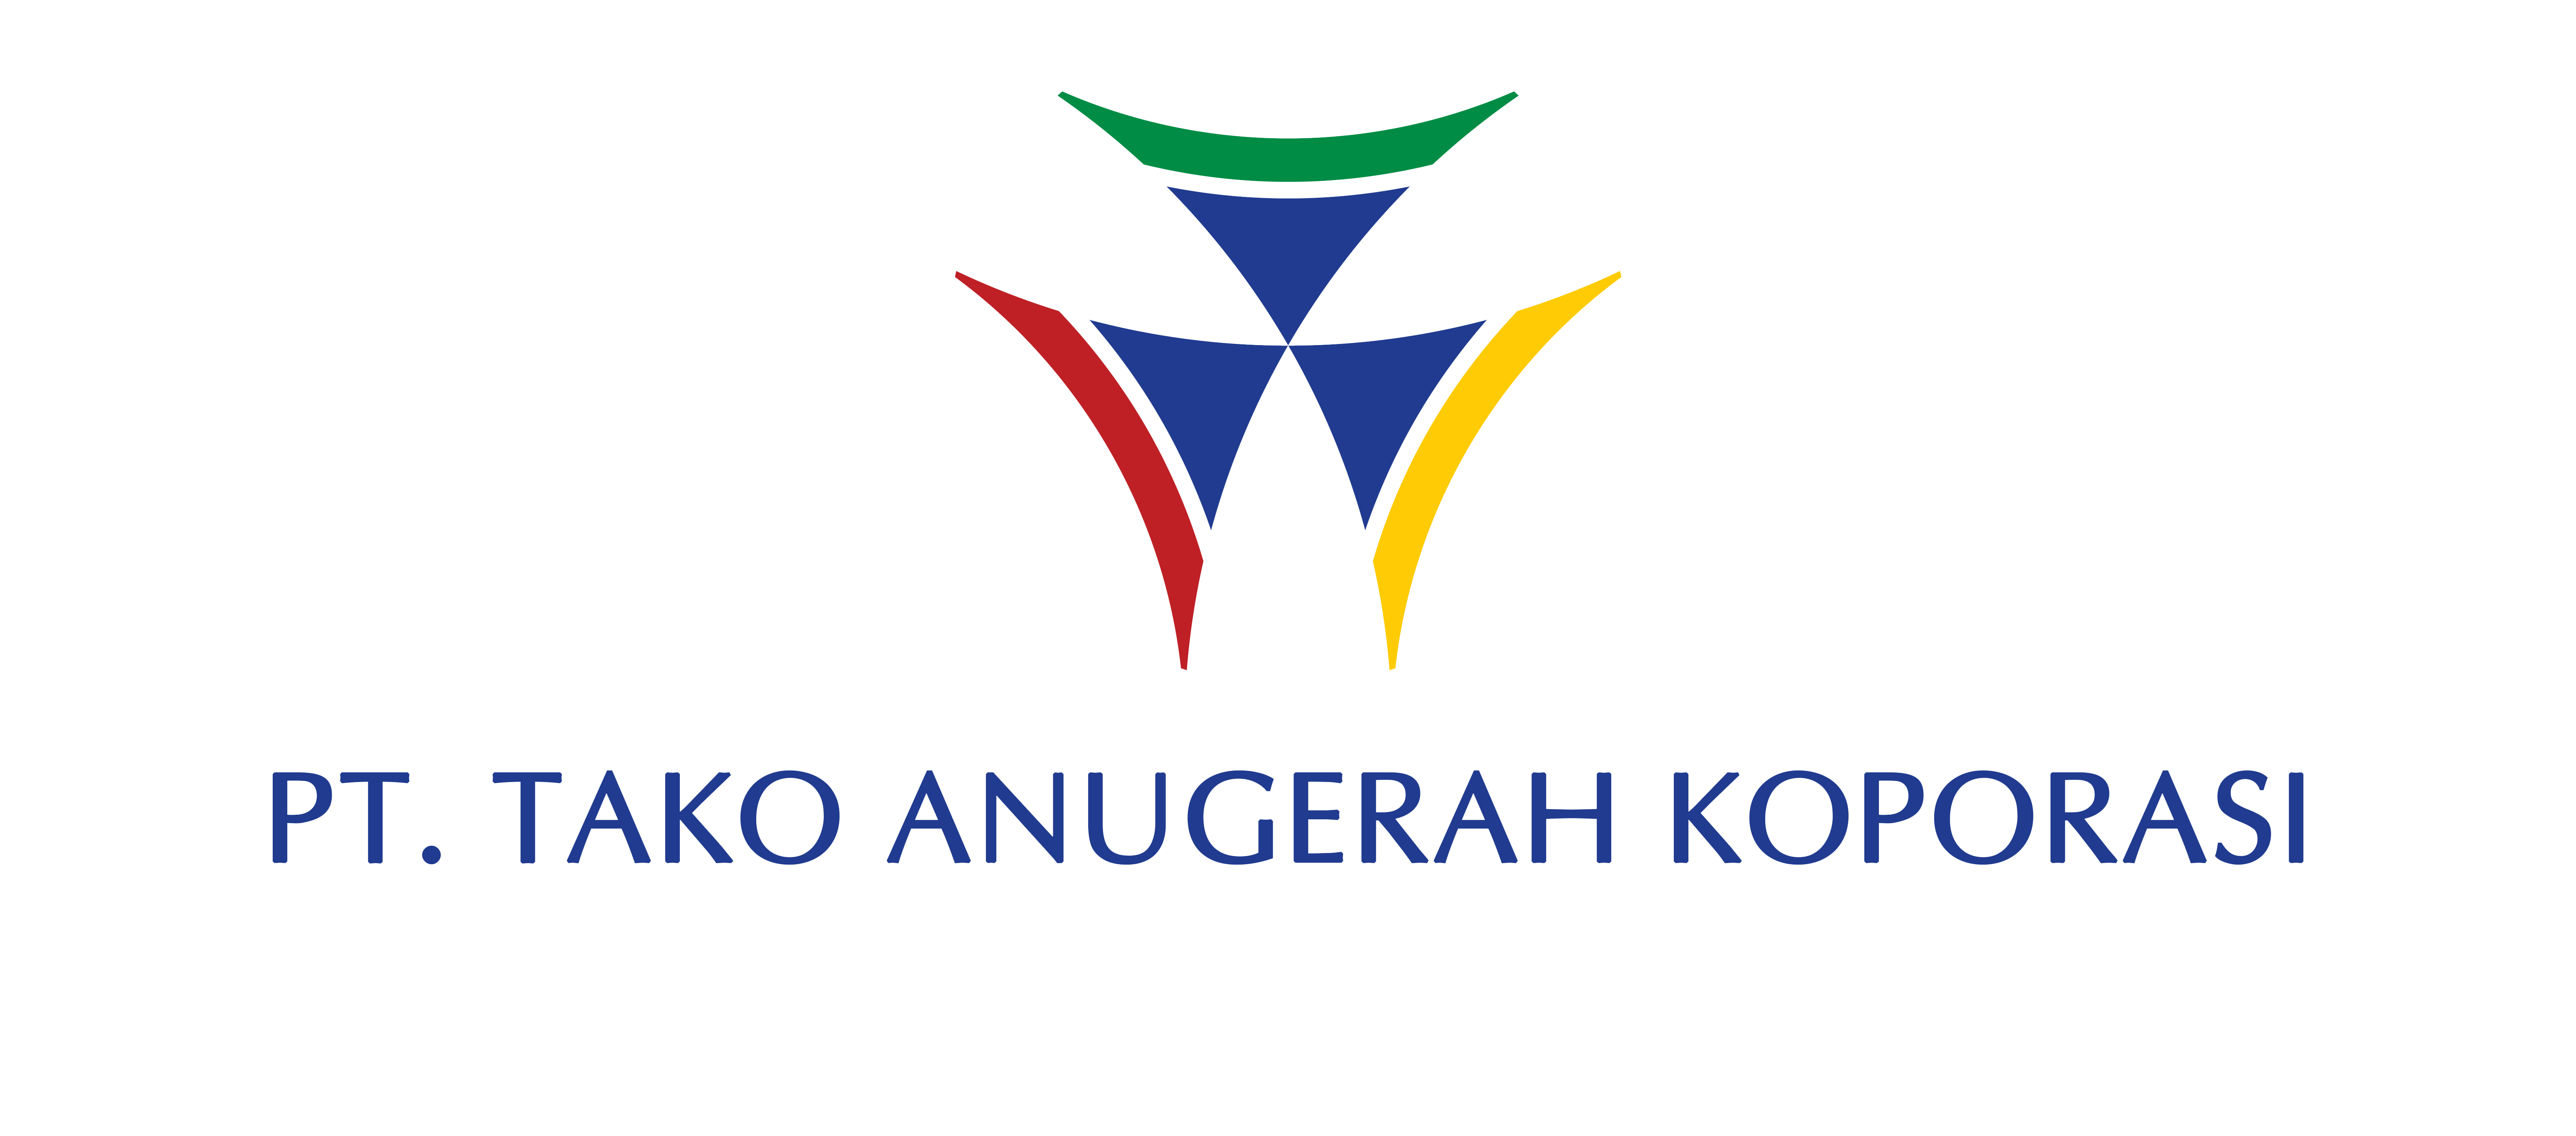 05_Logo_Tako Anugerah Koporasi, PT